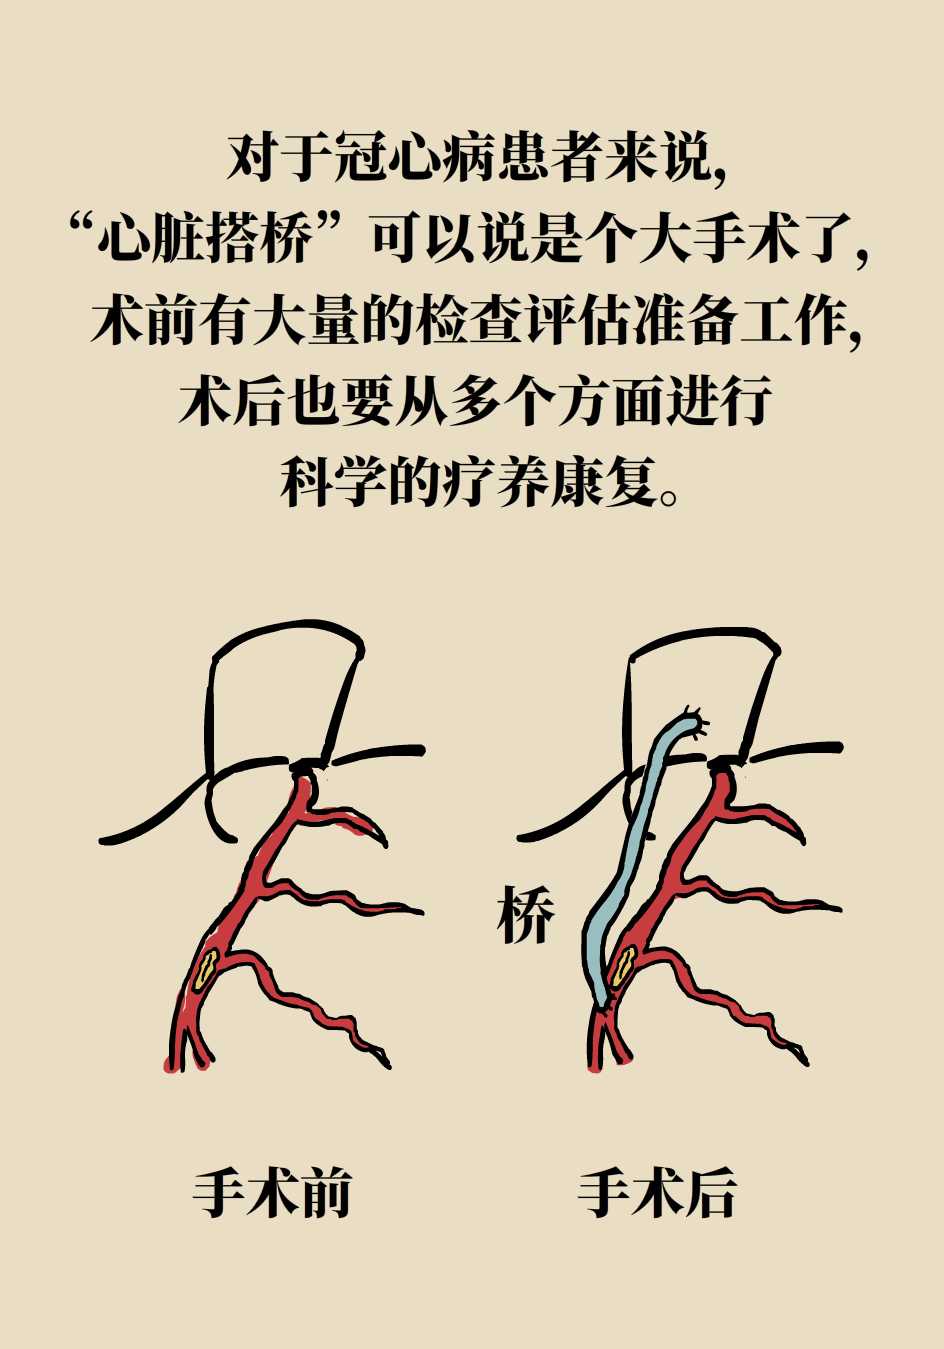 "心脏搭桥"后不能老是静养"护桥"后还要靠运动手术之后拔掉氧气管